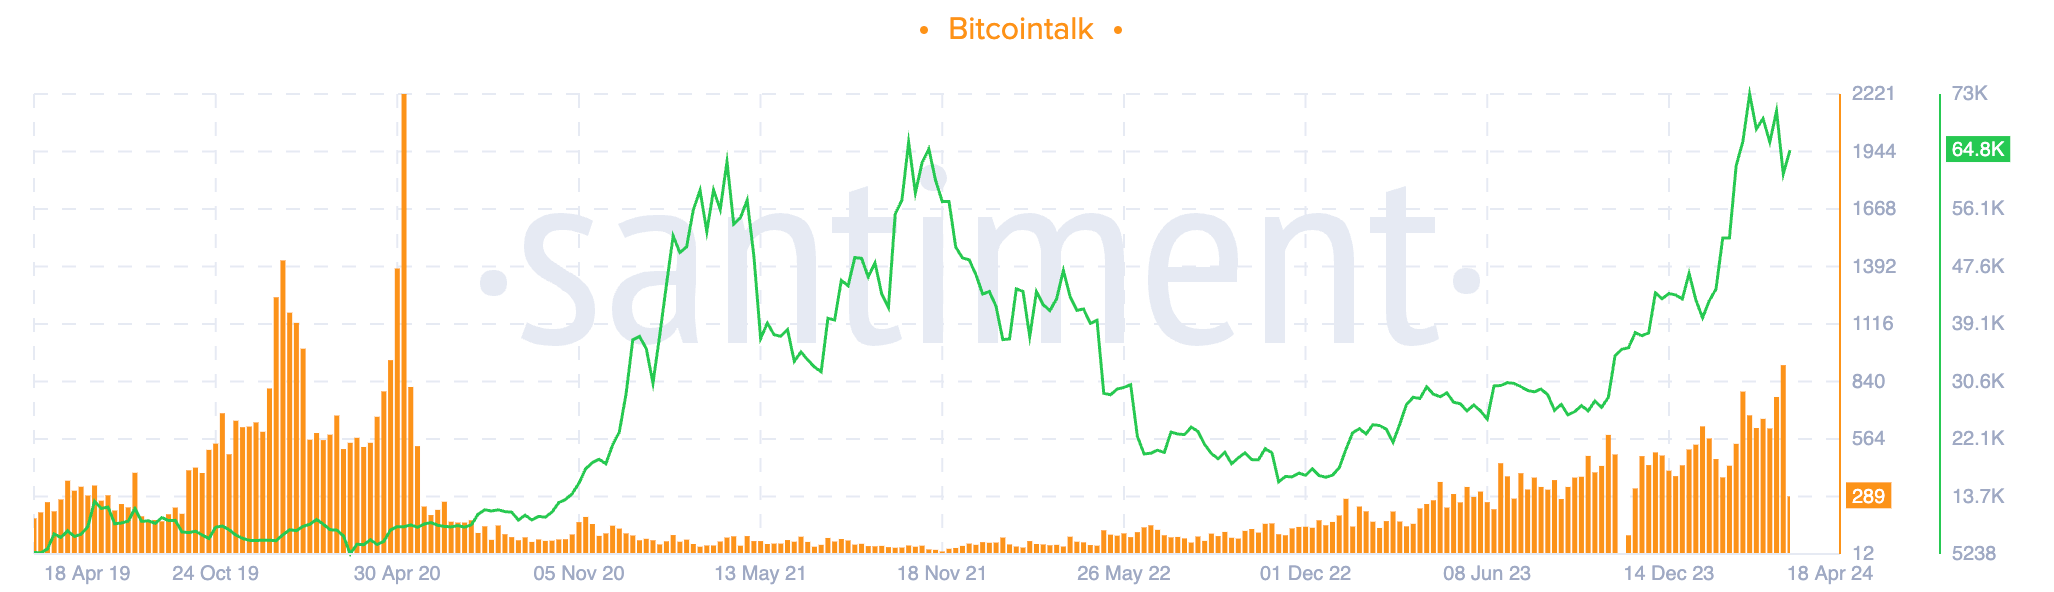 Bitcoin réduit de moitié l'intérêt de Bitcointalk (Santiment)